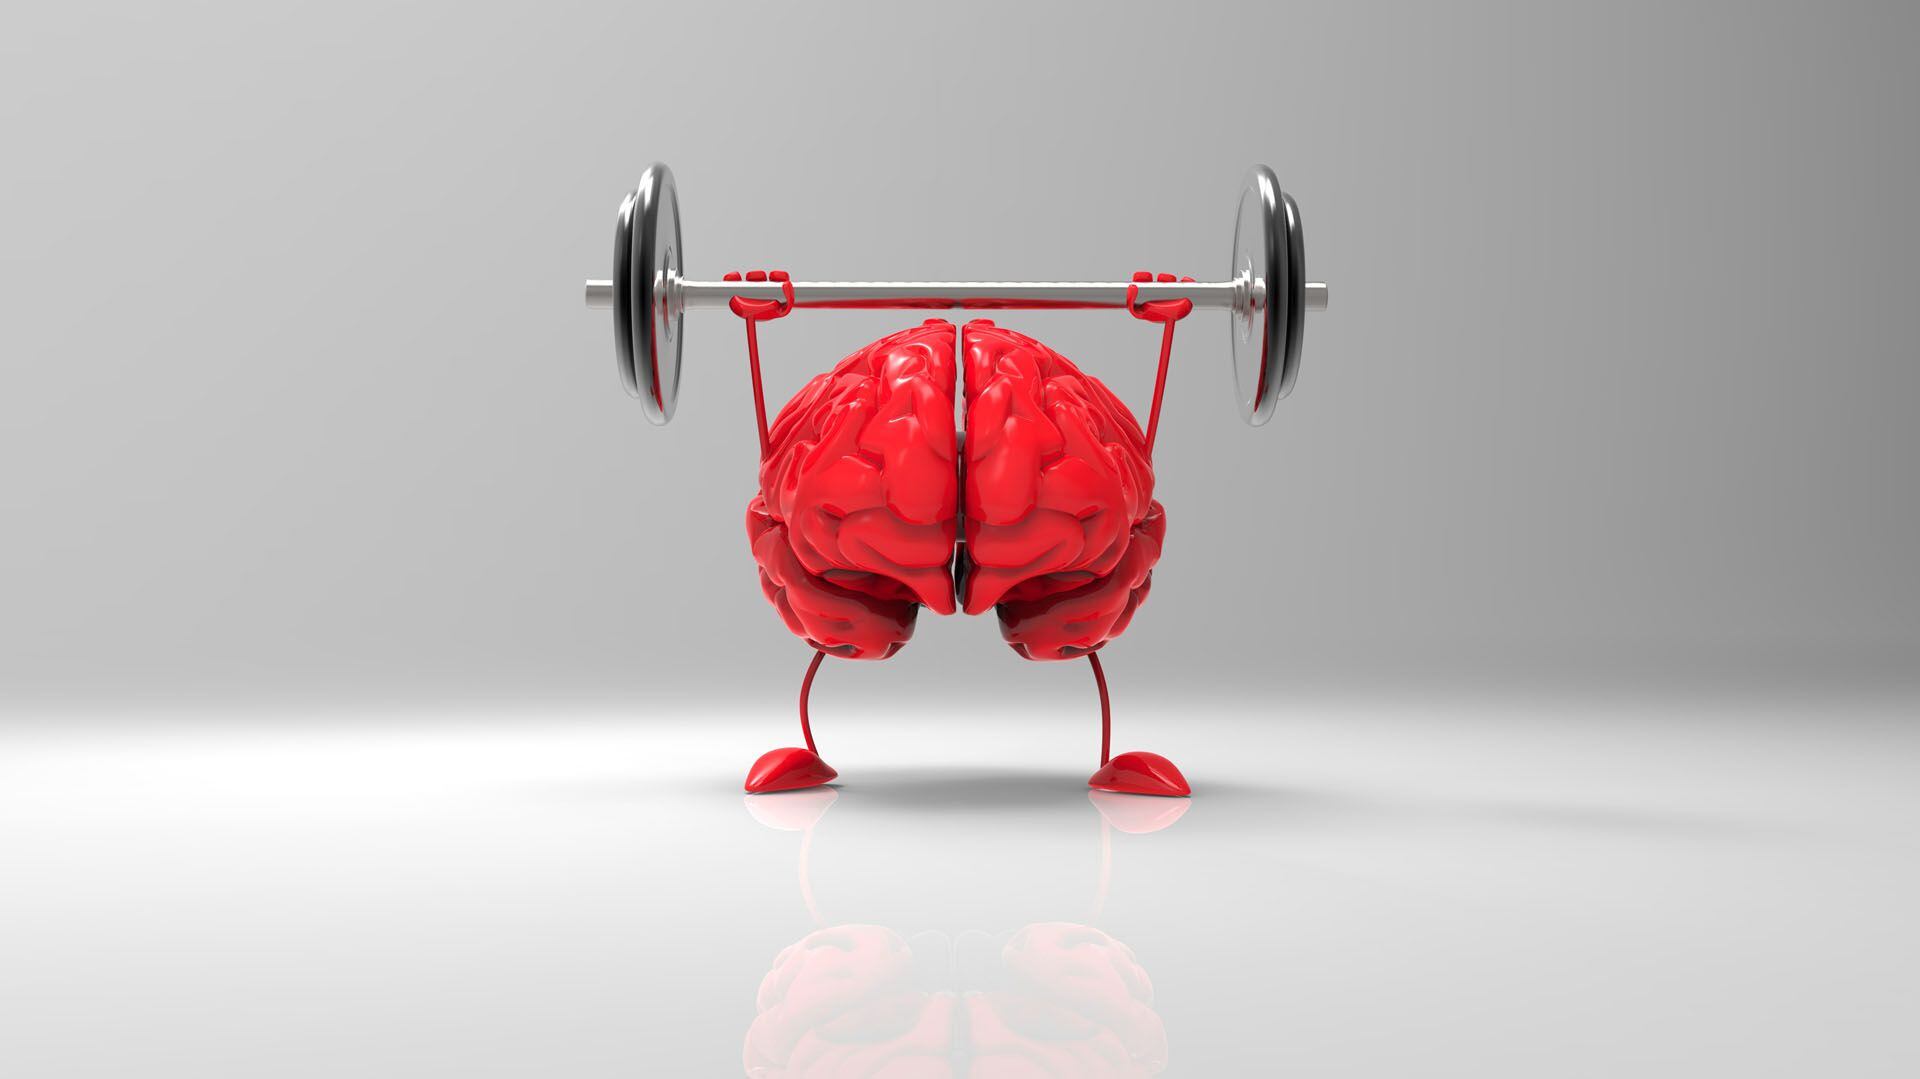 Ejercitar el cerebro es una de las recomendaciones de los médicos para tener una mente sana